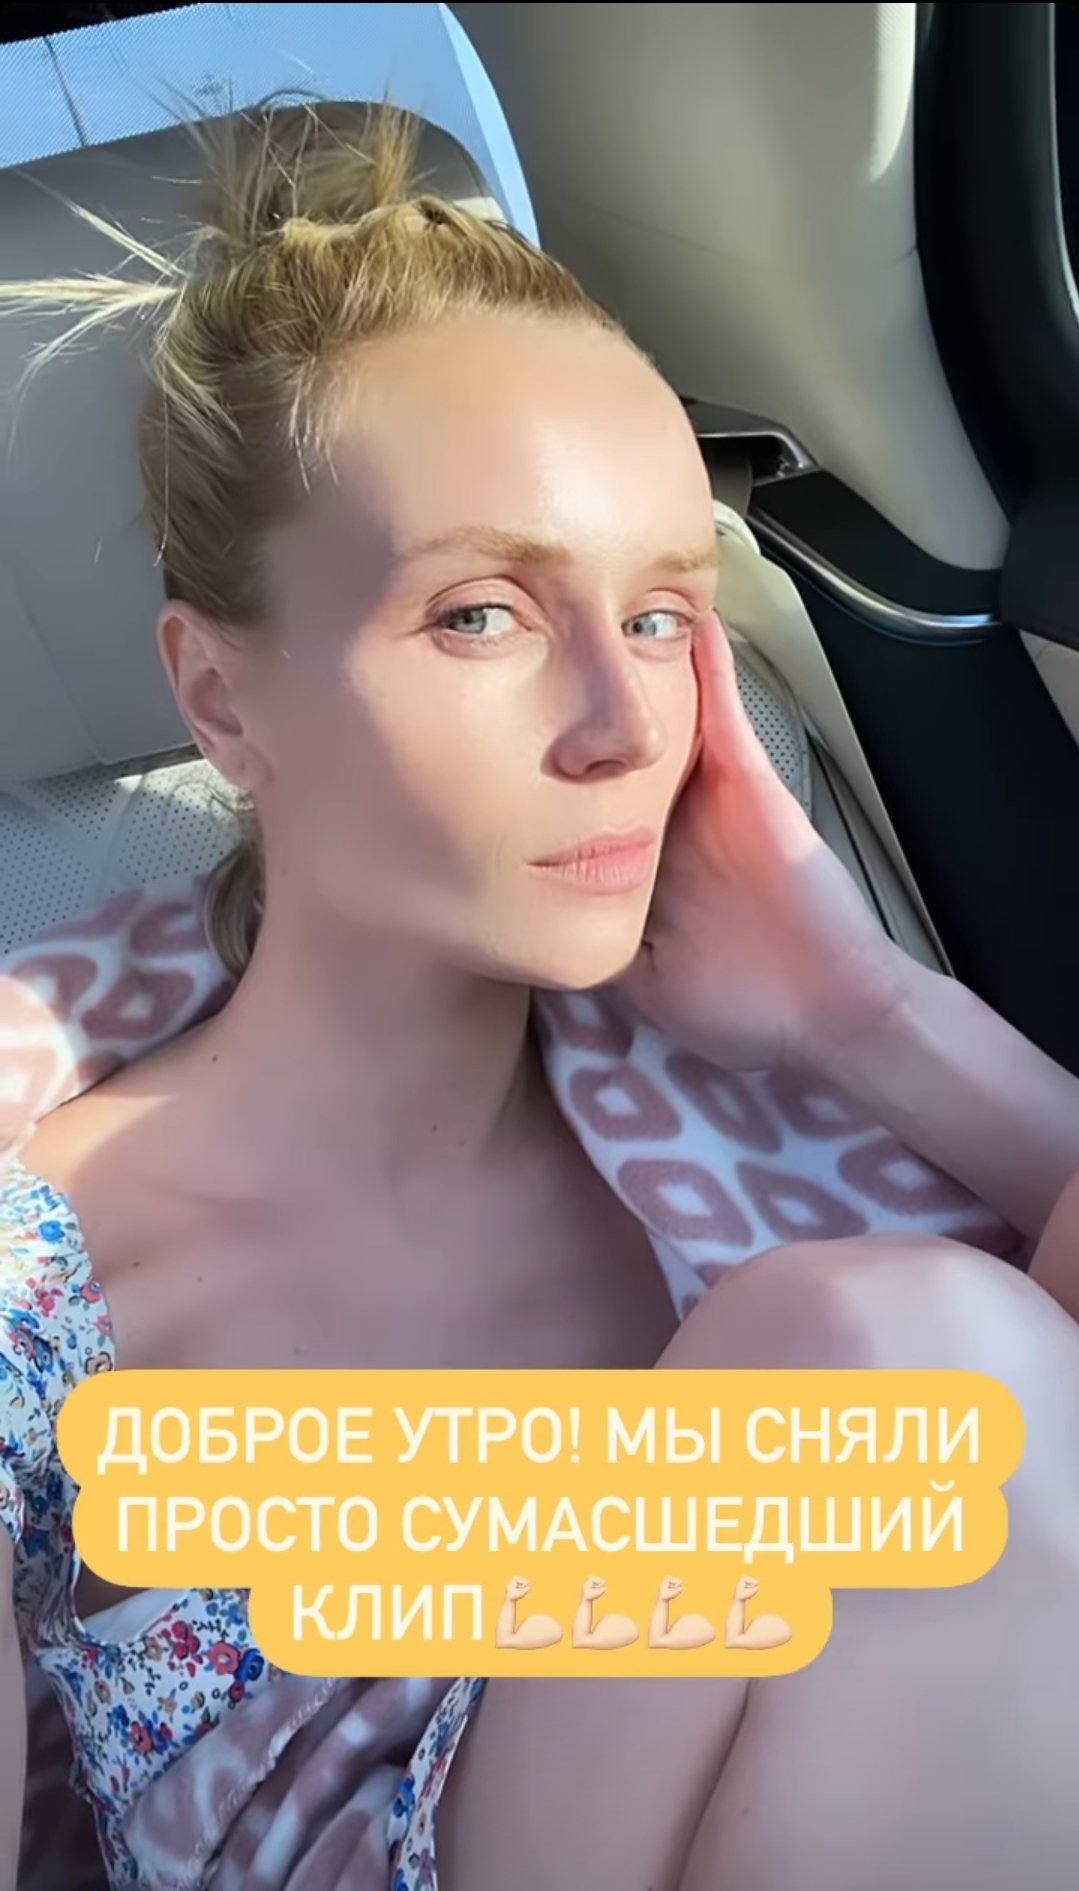 Полина Гагарина получила ссадины во время съёмок клипа с Аланом Бадоевым